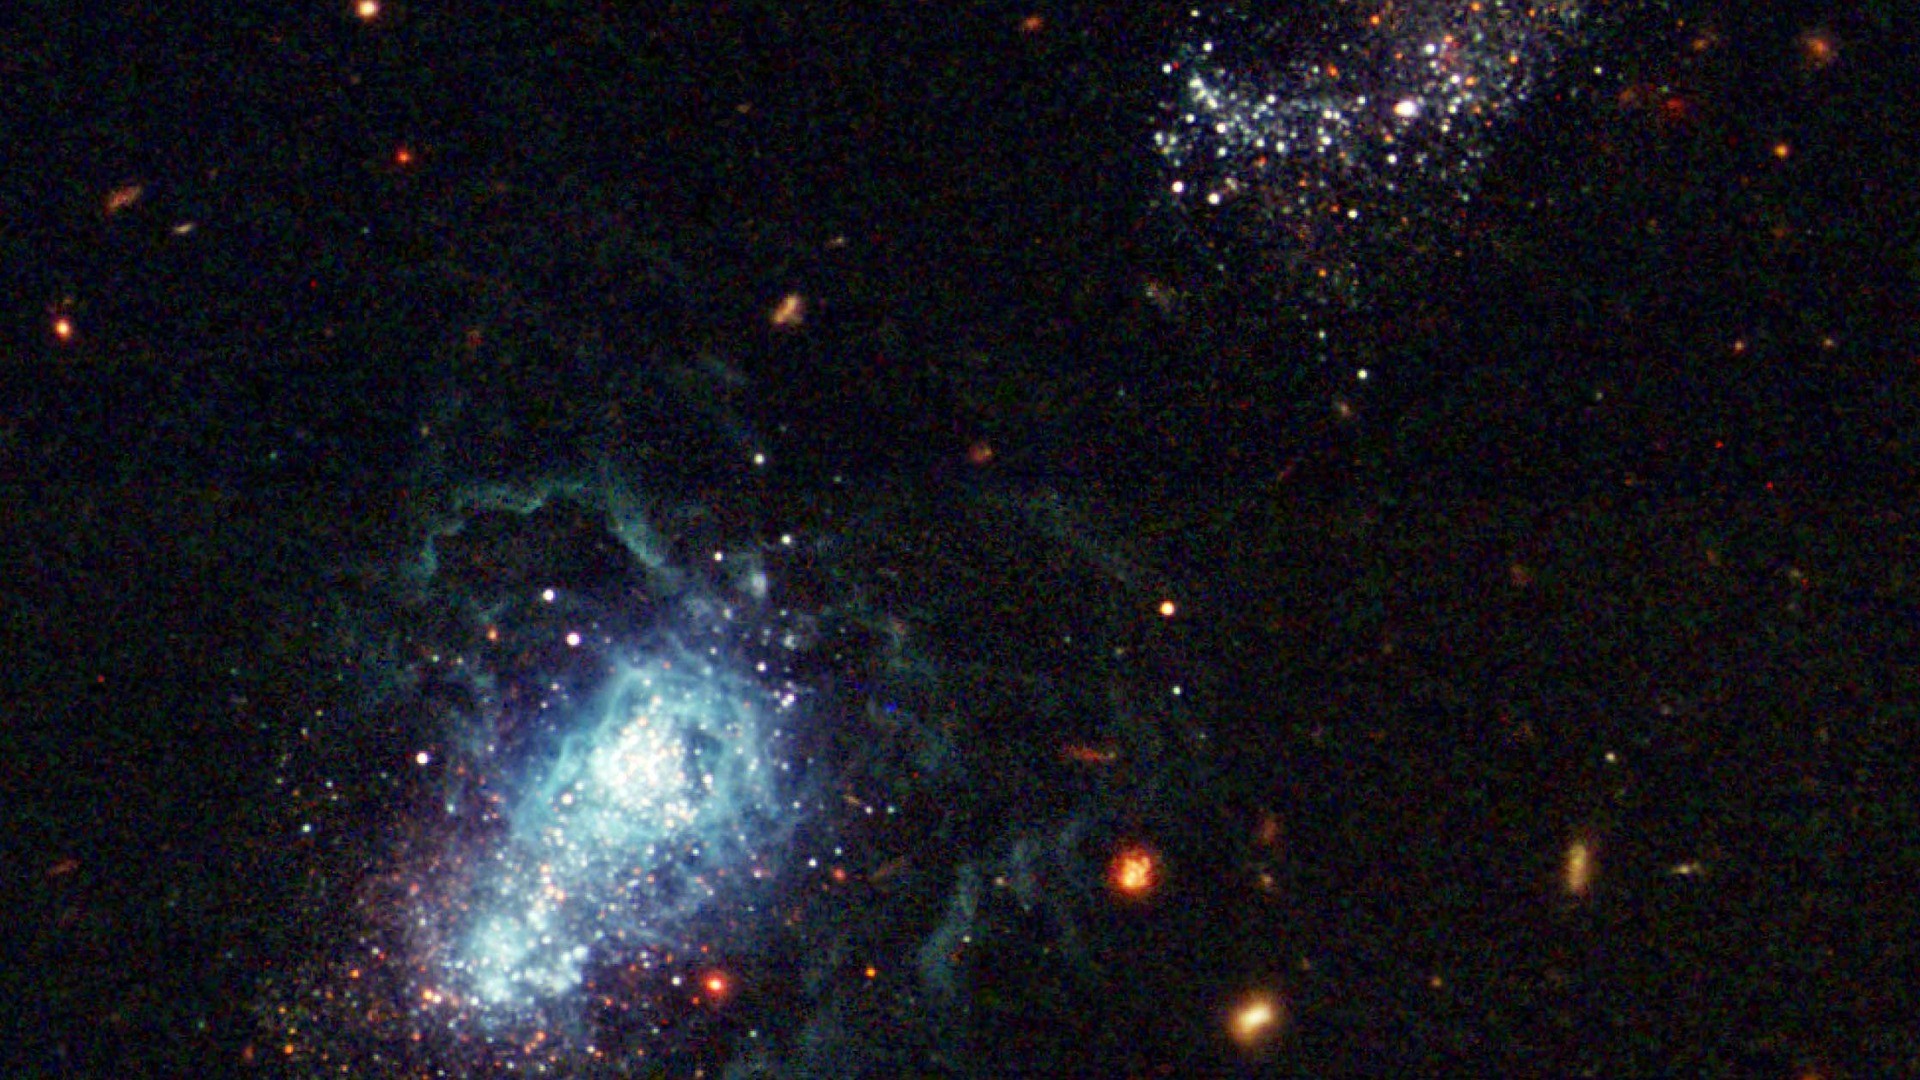 Nebula Hubble Telescope Explore the secrets of the universe HD allpaper – wallpaper download